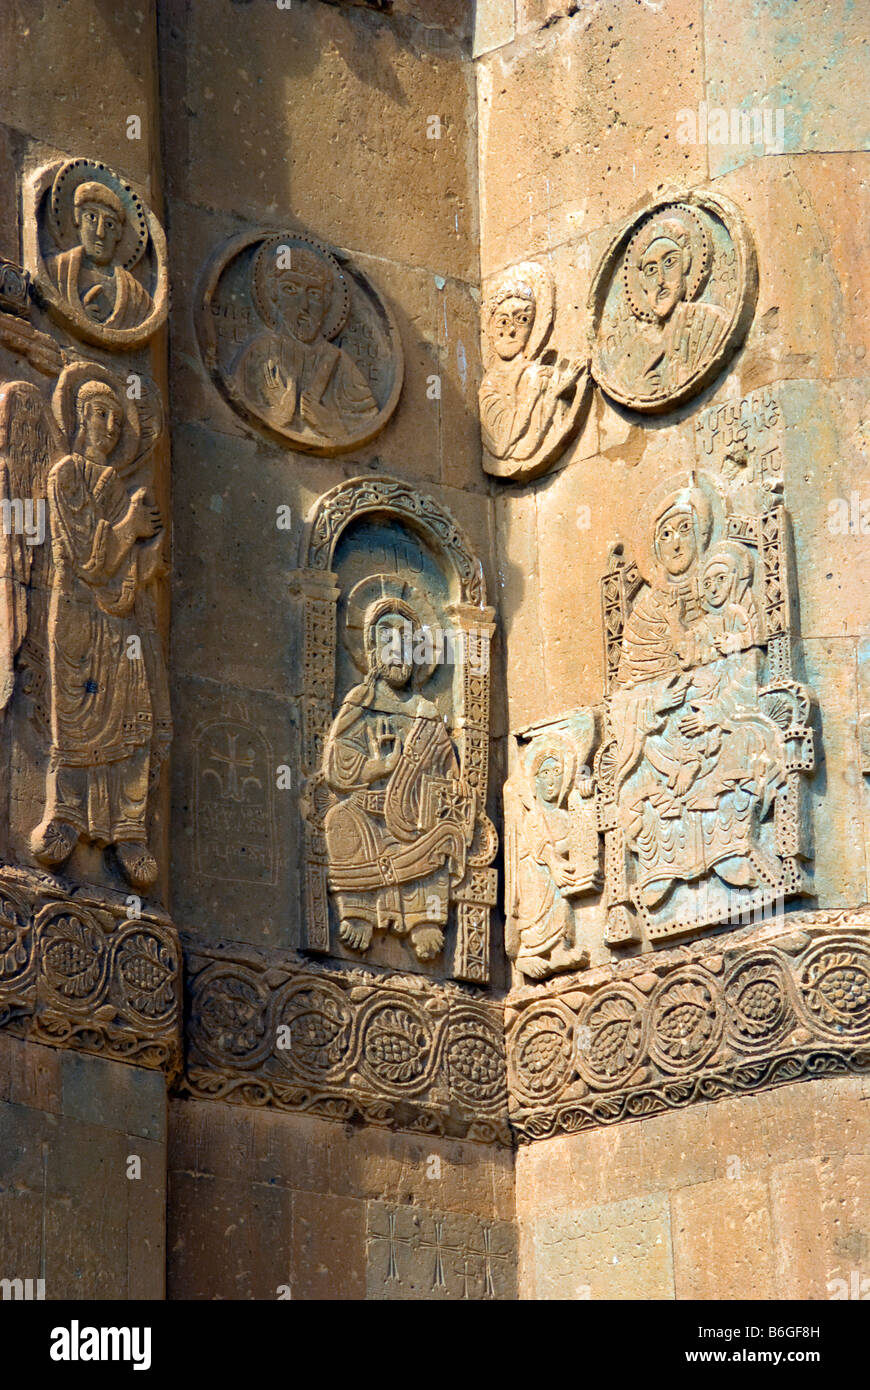 Lac de Van's 10e siècle église arménienne de la Sainte-Croix, sculptures en relief sur la façade, sur l'île Akdamar Banque D'Images